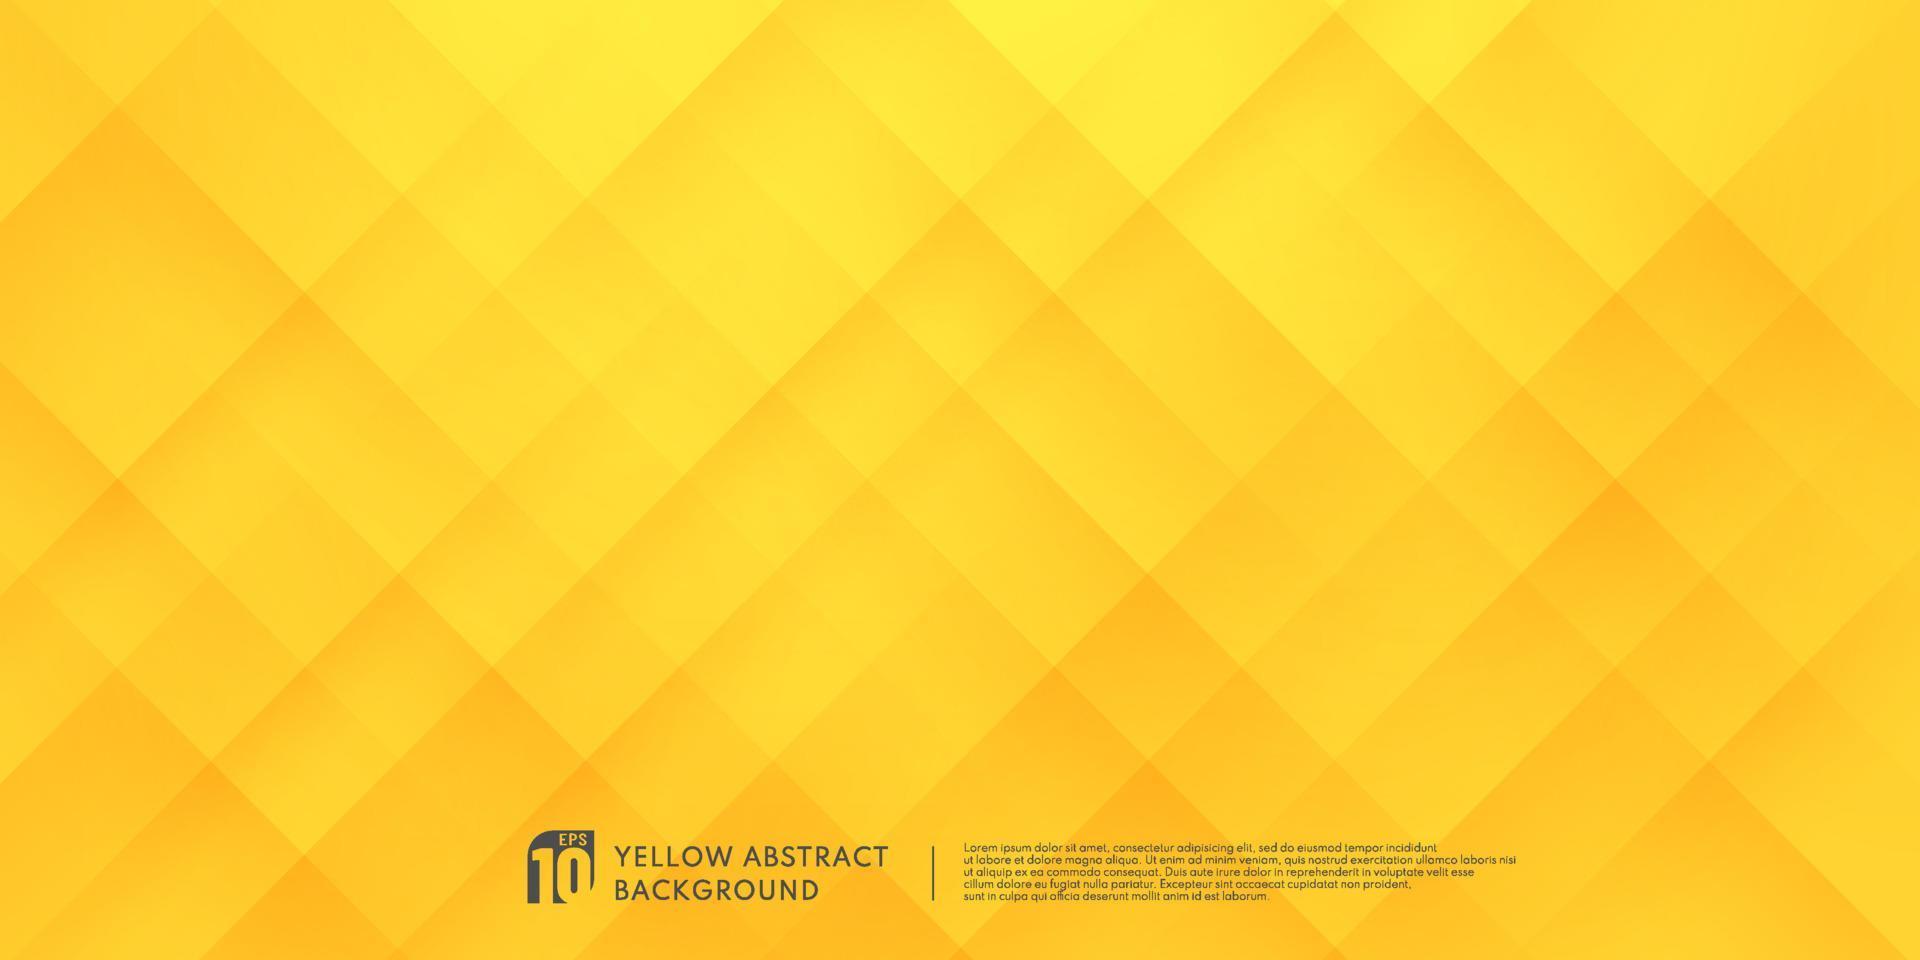 abstraktes gelb-orangefarbenes geometrisches quadrat mit beleuchtungs- und schattenhintergrund. modernes futuristisches breites bannerdesign. kann für Anzeige, Poster, Vorlage, Geschäftspräsentation verwendet werden. Vektor eps10